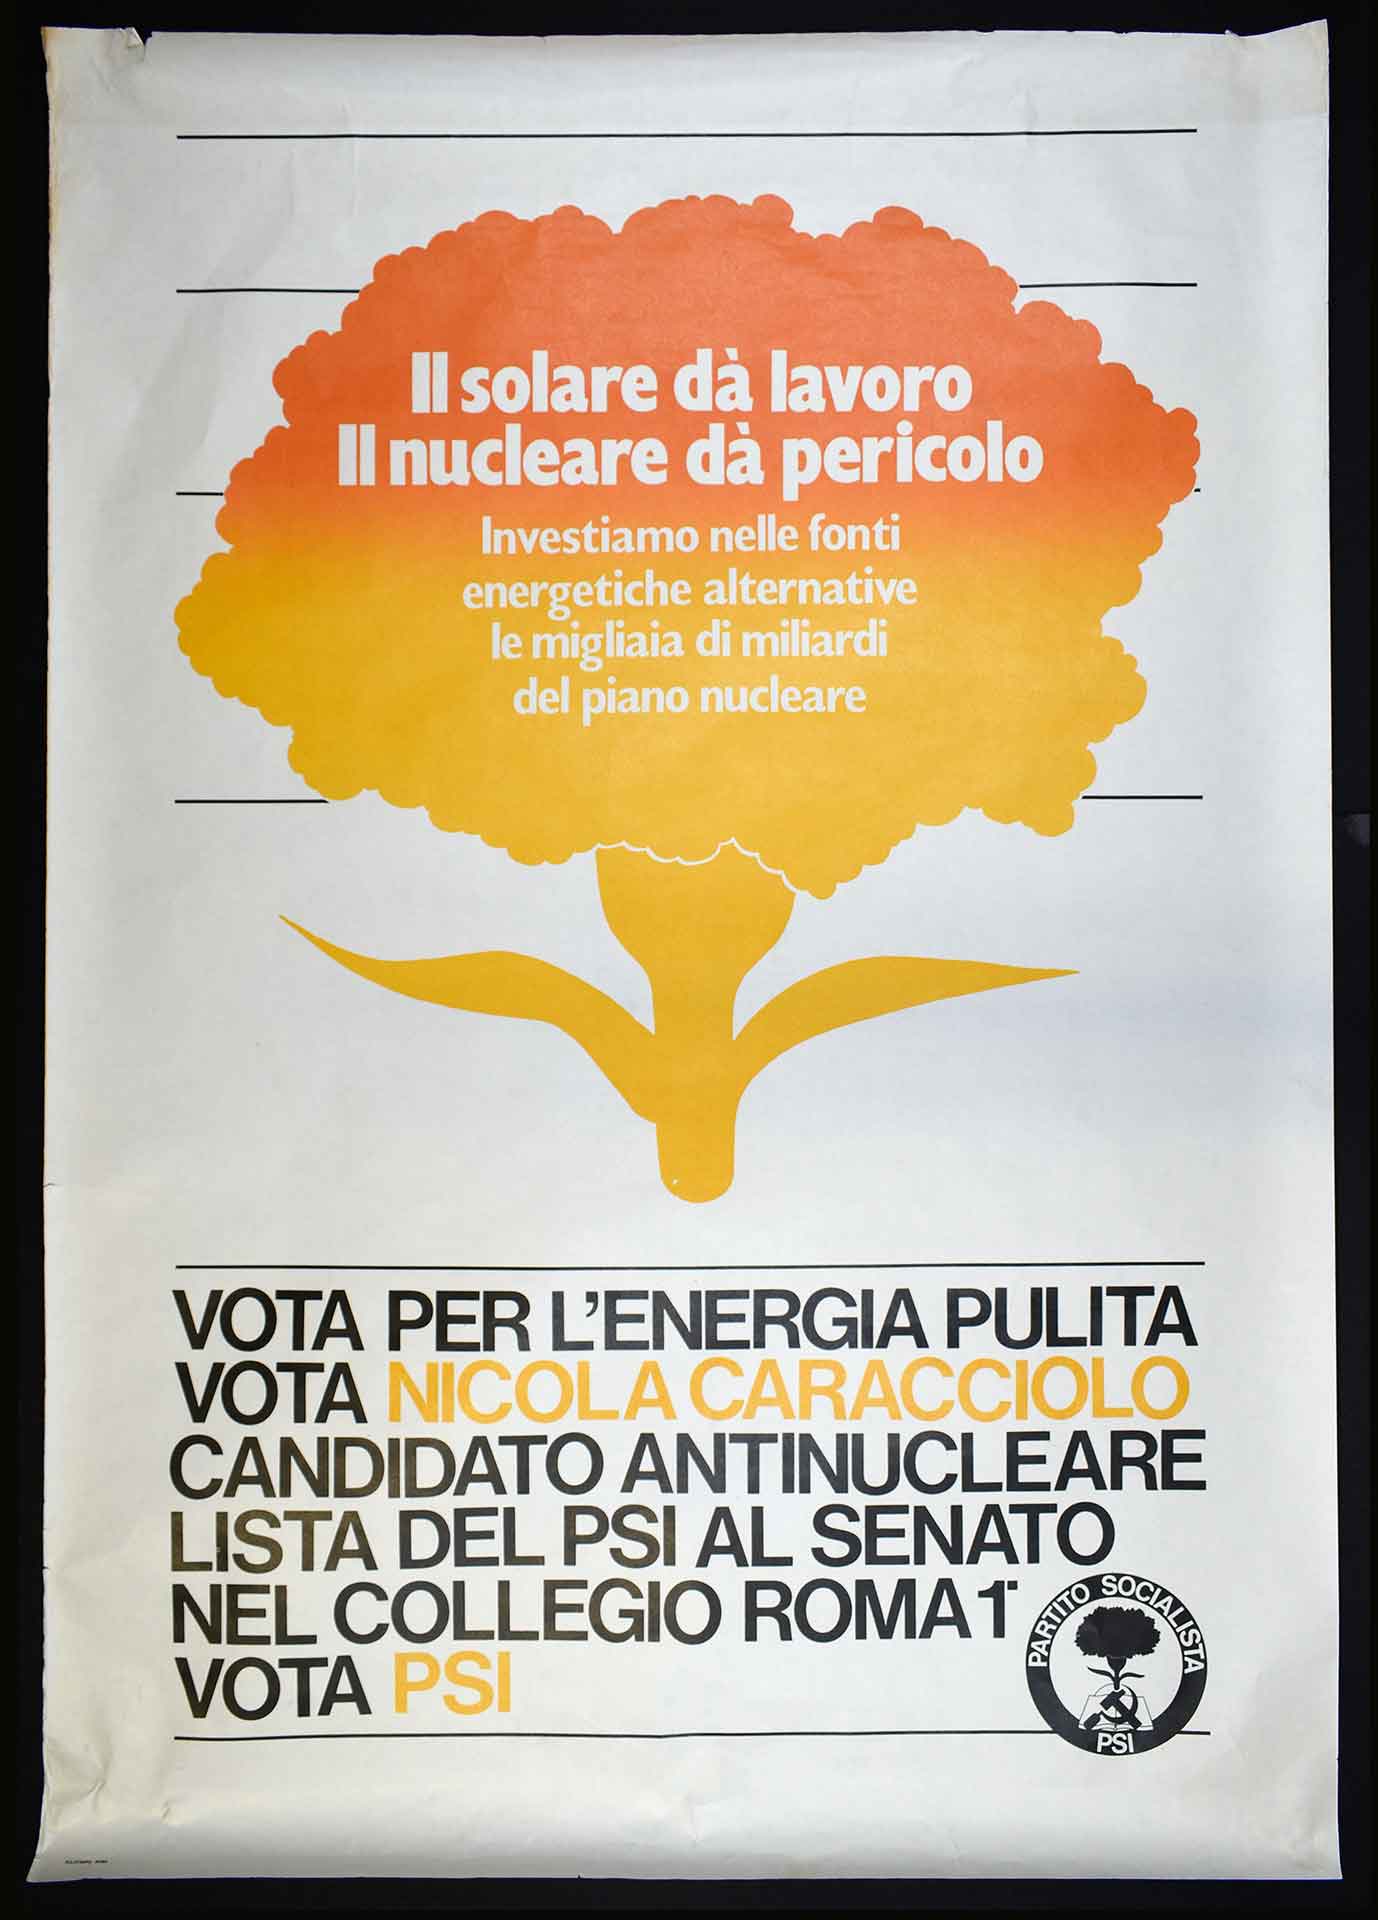 Nicola Caracciolo candidato antinucleare nella lista del Partito socialista italiano (PSI) al Senato. Stampa Polistampa, Roma. Campagna elettorale.